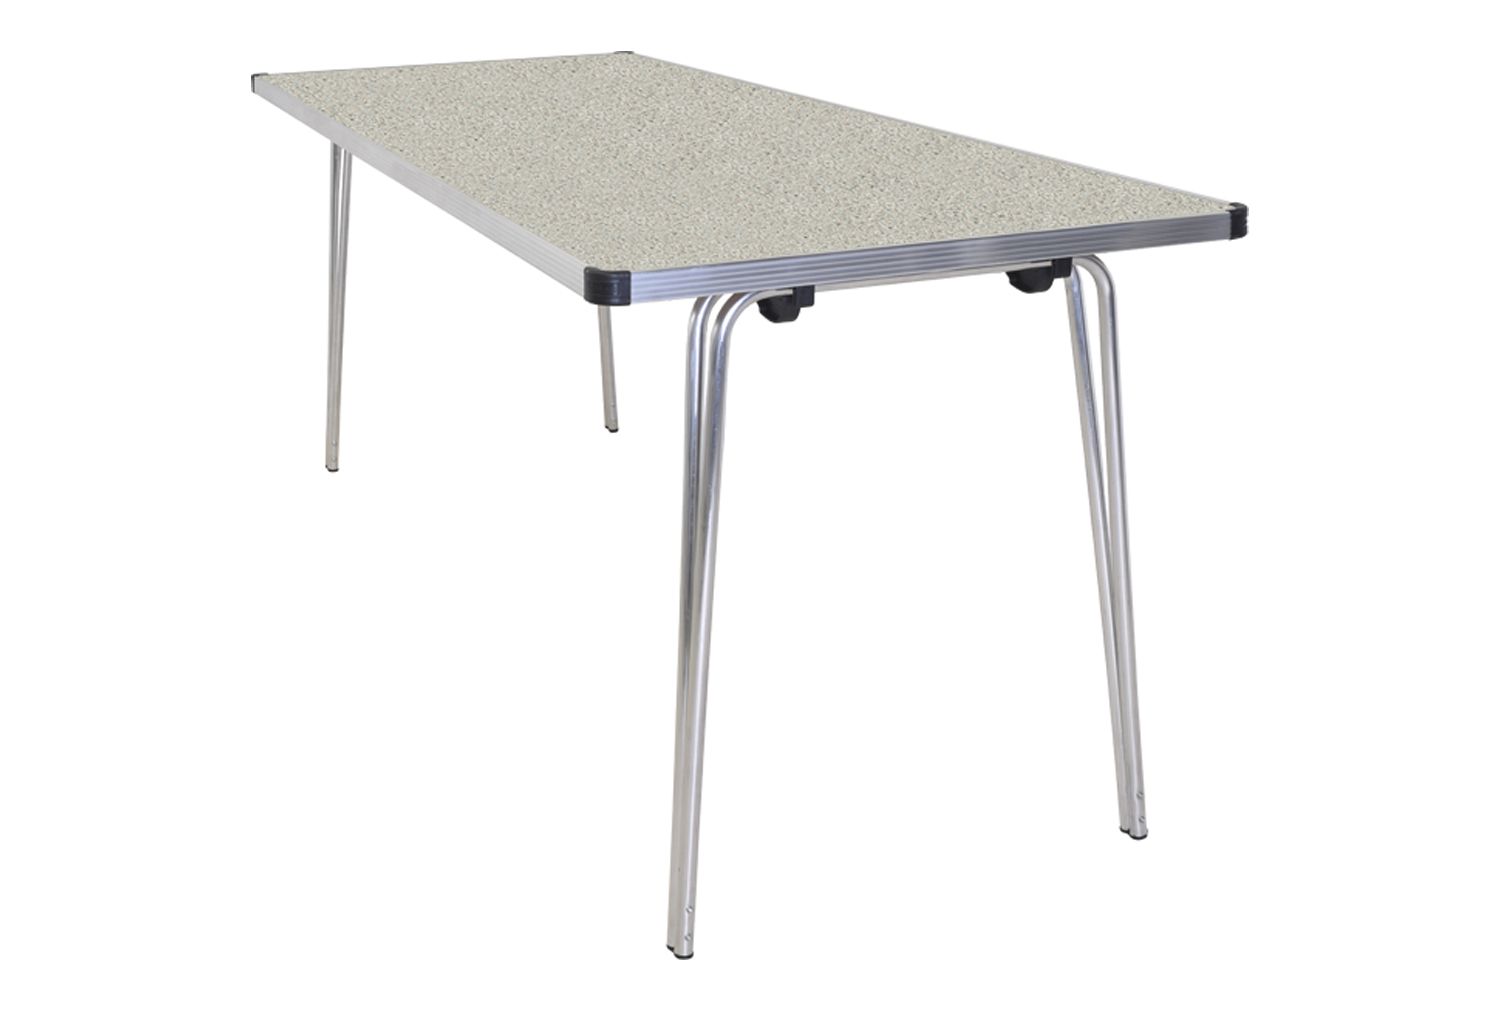 Gopak Contour Folding Table, 183wx61d (cm), Ailsa Grey